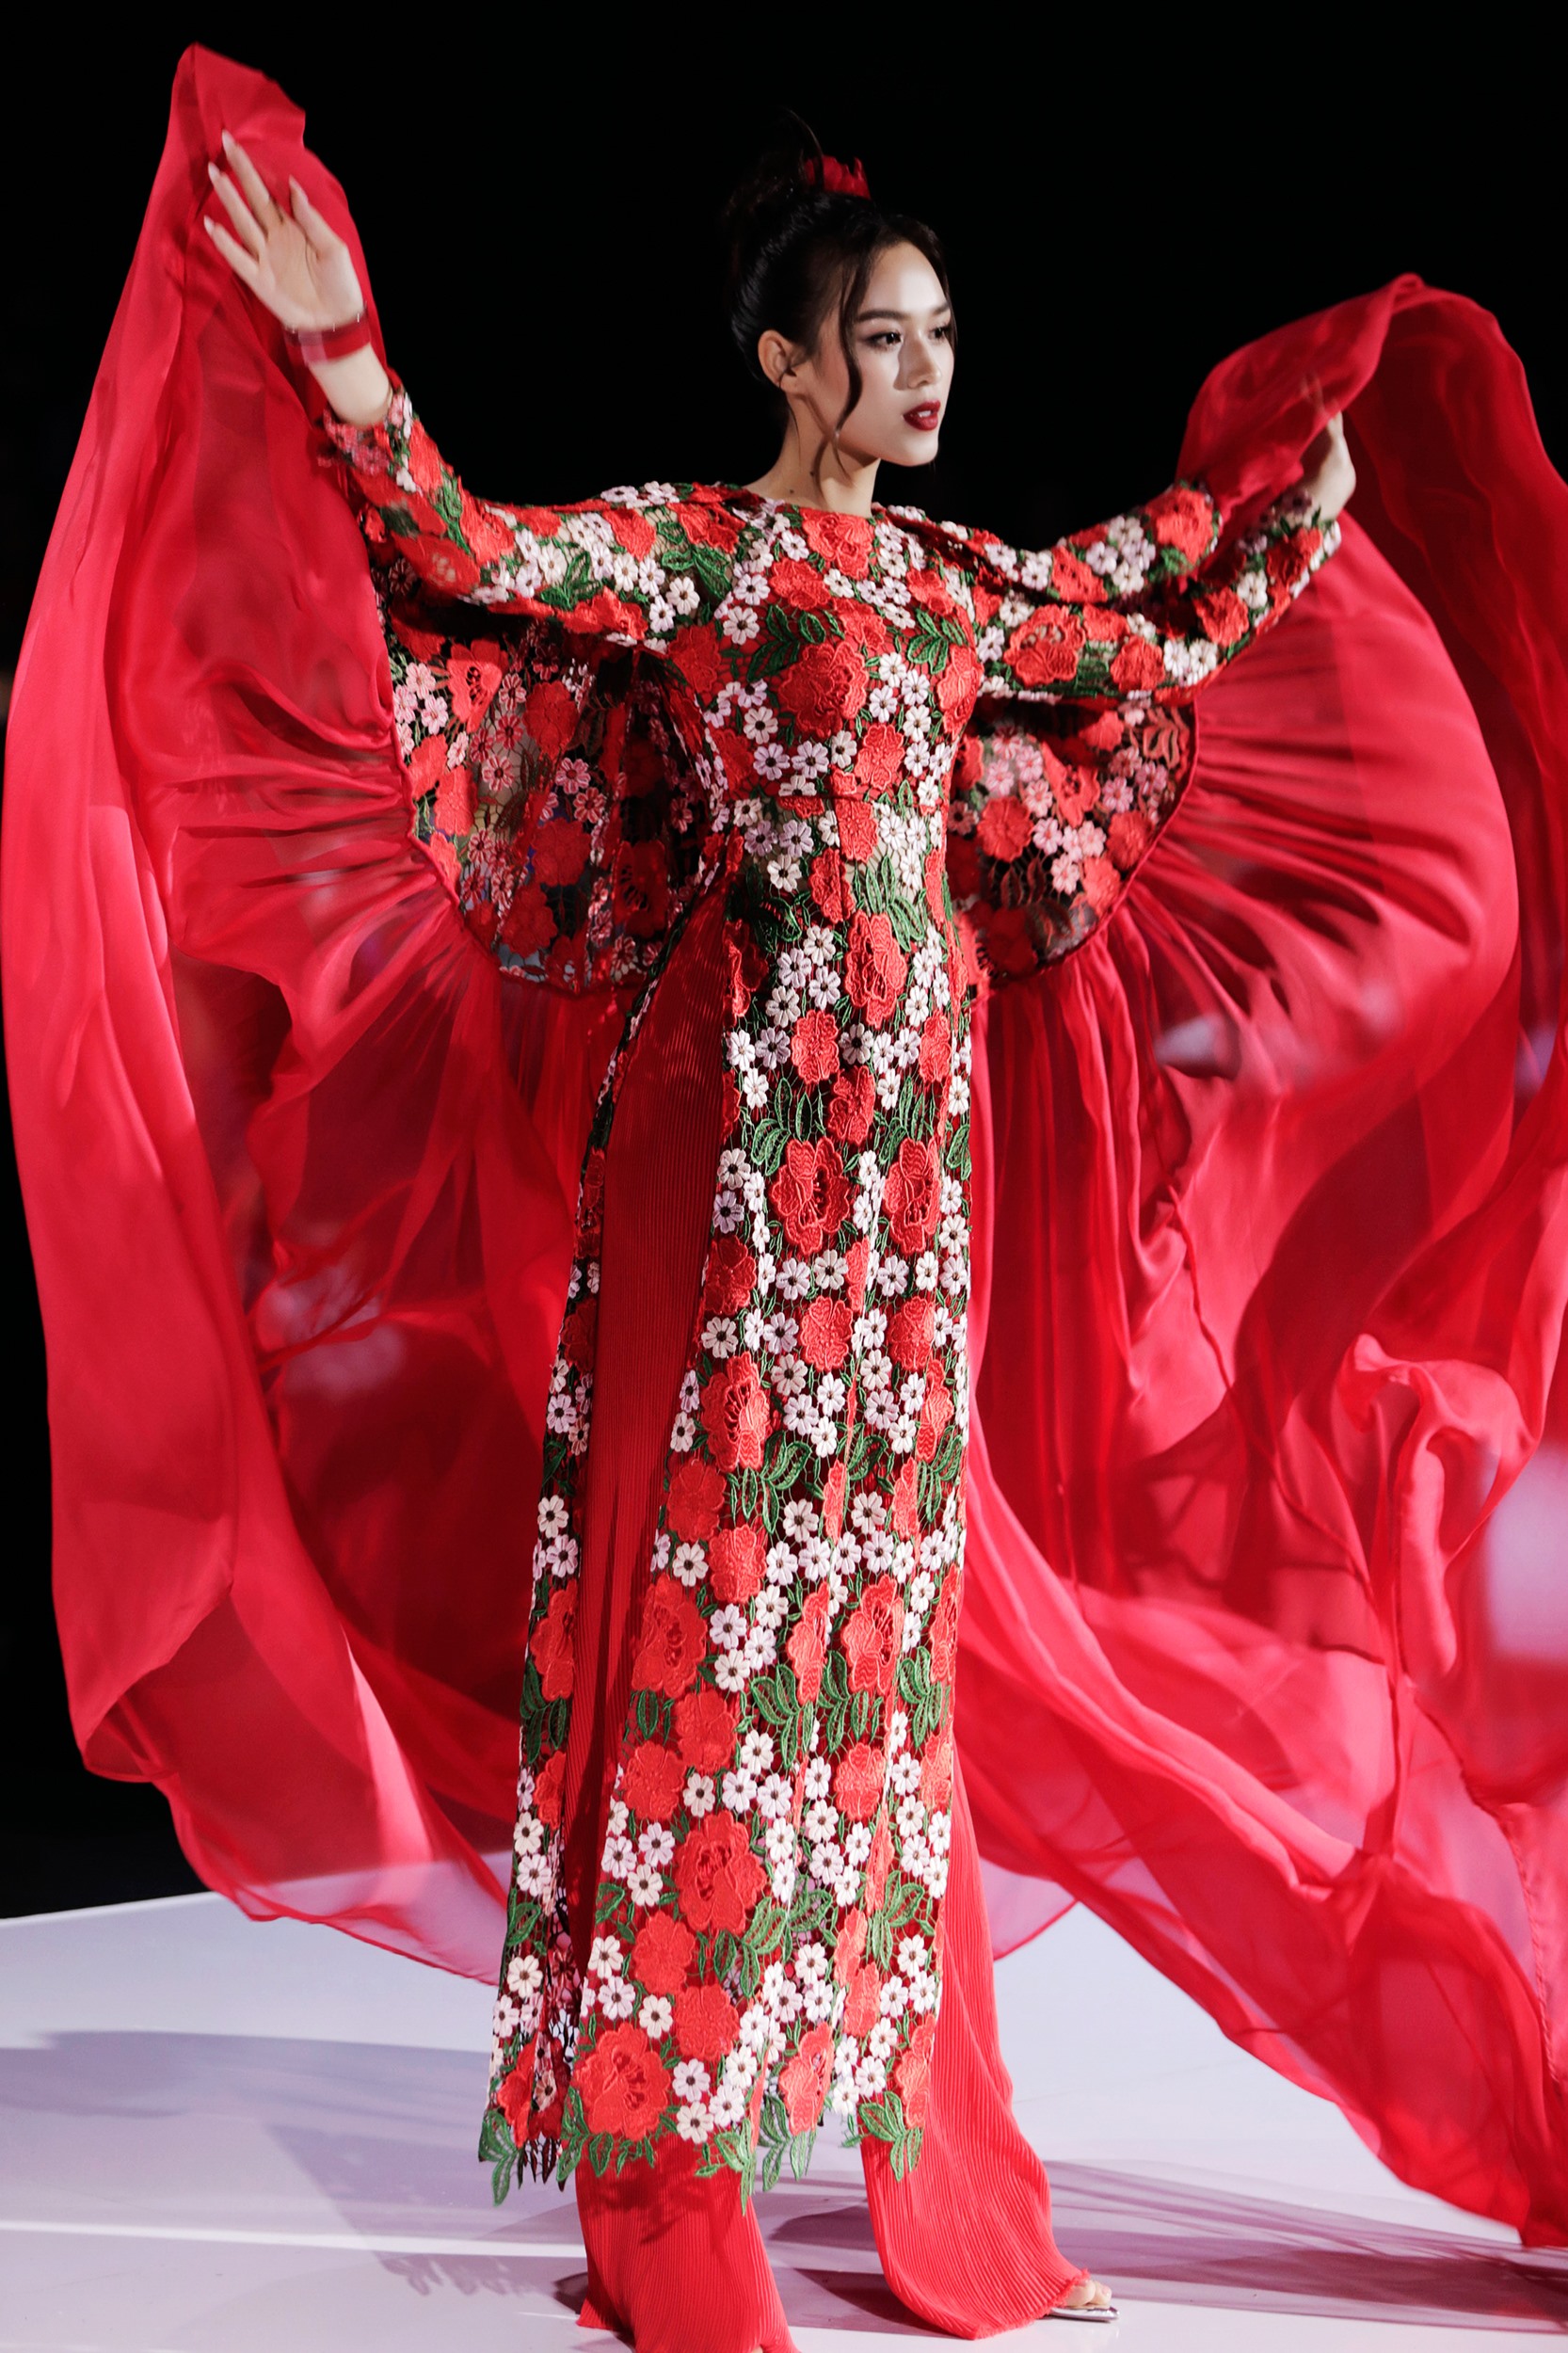 Hoa hậu Đỗ Thị Hà cùng bộ trang phục đỏ gạch với những chi tiết đậm nét cổ điển tự tin sải bước trên sàn diễn. Nhìn những chi tiết trên bộ trang phục, nhiều người không khỏi liên tưởng tới những cánh hoa hồng đang nở rộ rực rỡ, thể hiện cho sự bất diệt của tình yêu.